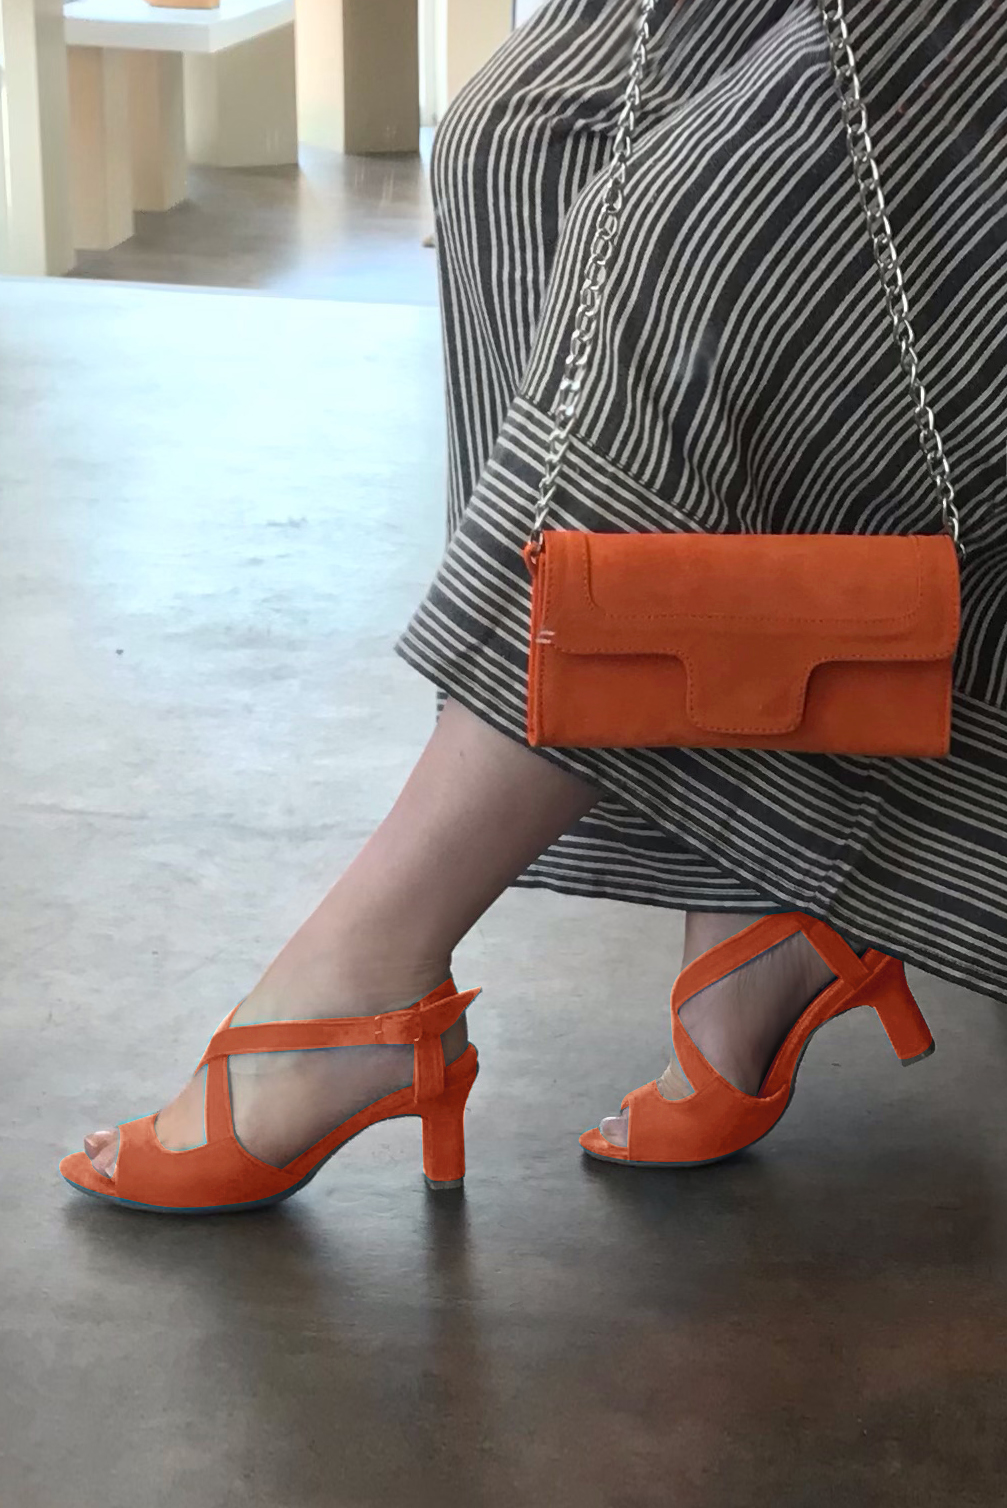 Sandale femme : Sandale soirées et cérémonies couleur orange clémentine. Bout rond. Talon haut trotteur. Vue porté - Florence KOOIJMAN